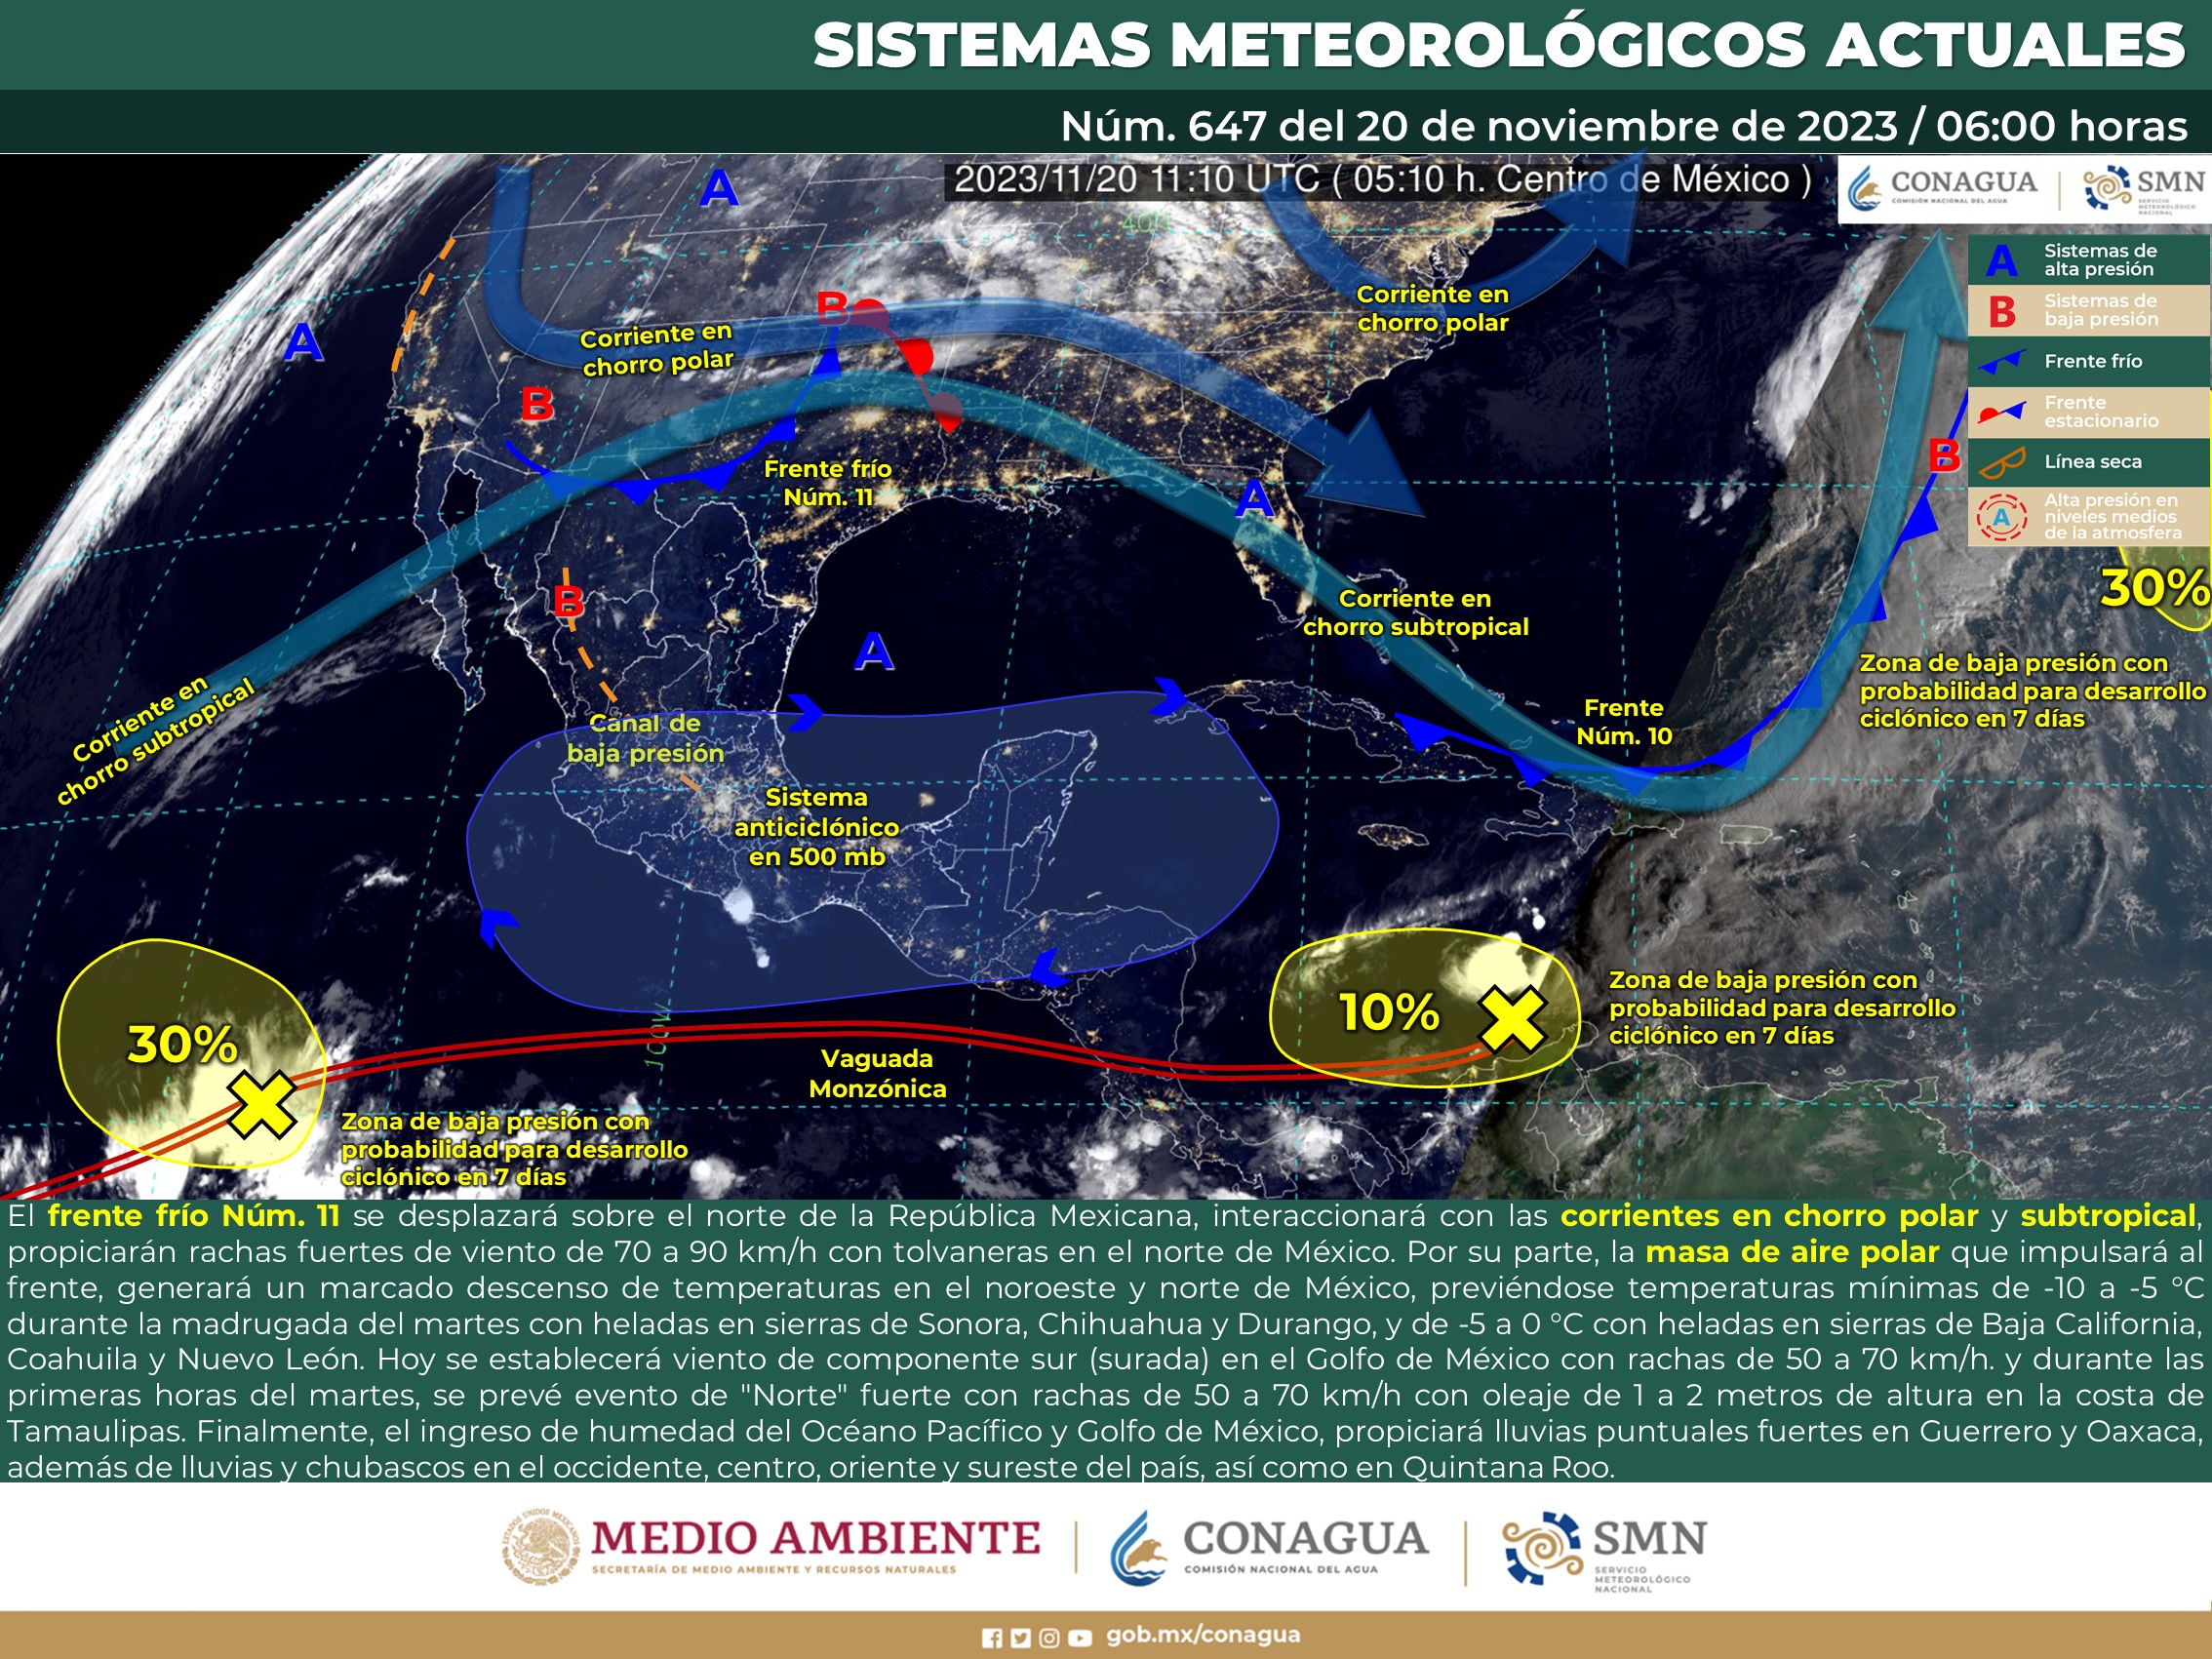 Asimismo, fuertes vientos en Baja California, Sonora Durango, Chuhuahua y Coahuila